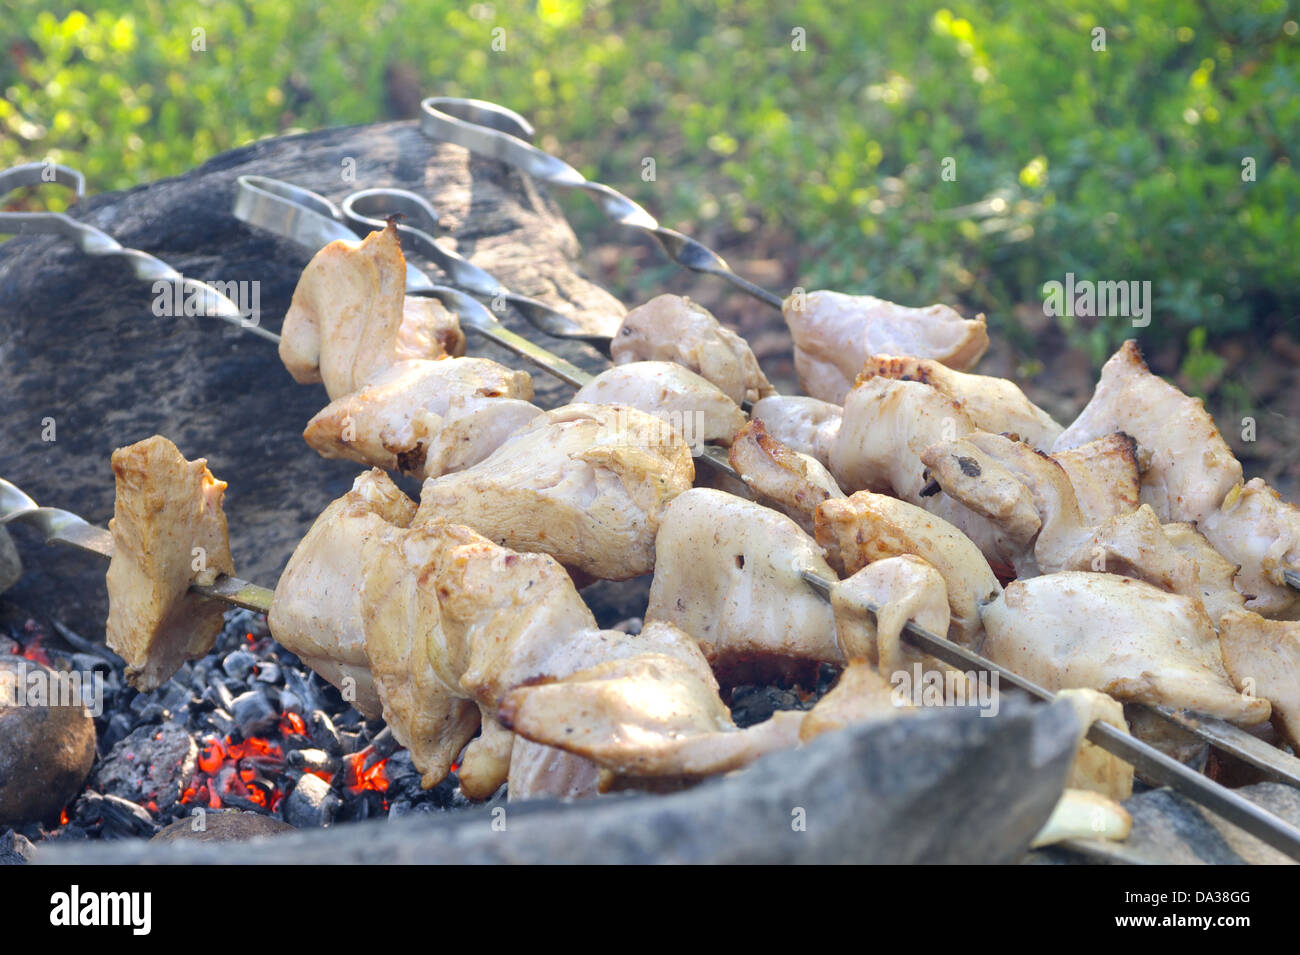 Grigliate di carne bianca preparazione shish kebab Barbecue cibo fresco picnic all'aperto Foto Stock